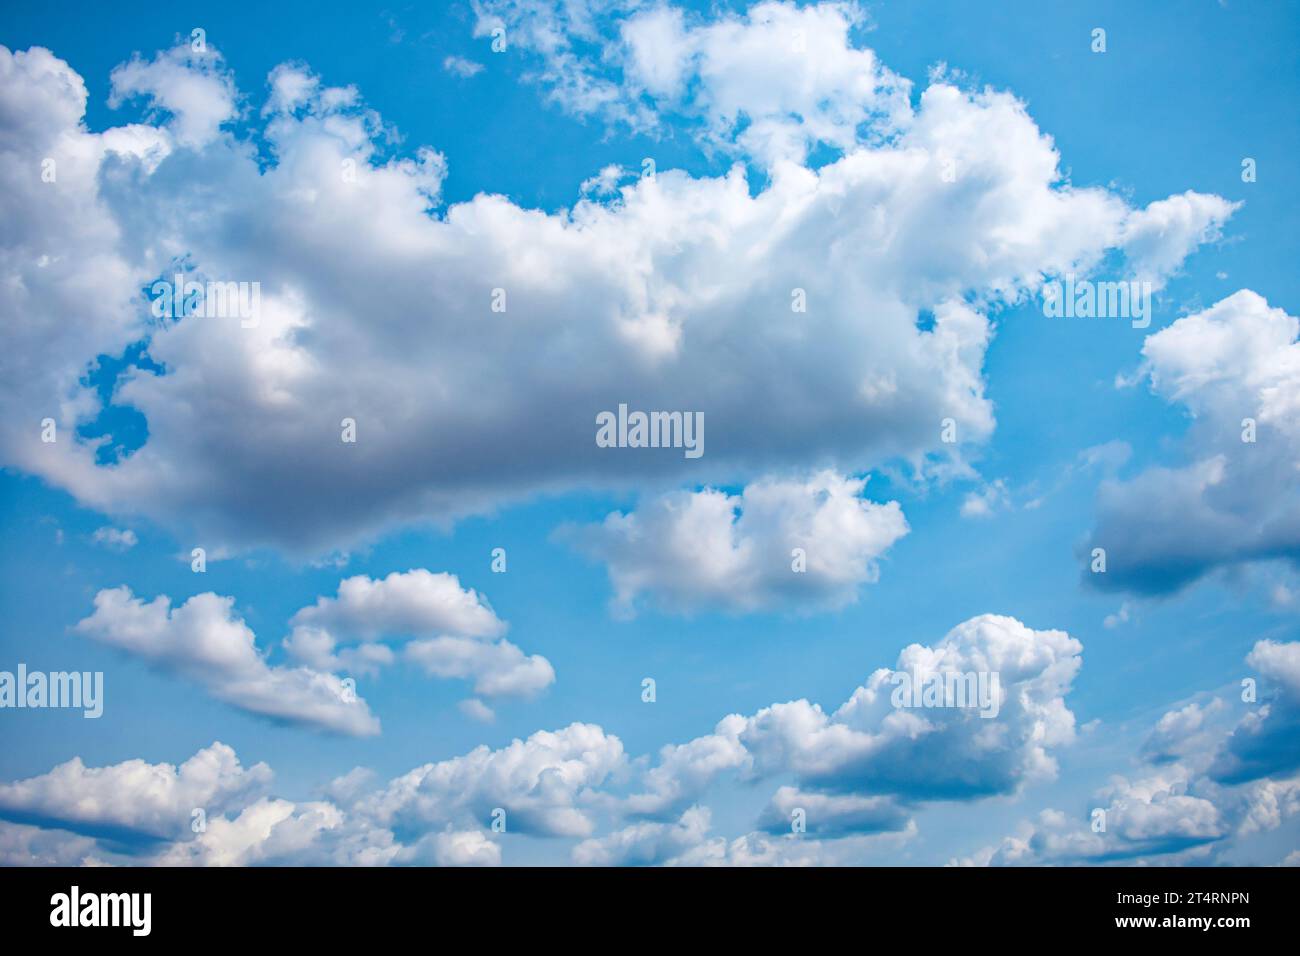 In dieser malerischen Szene ist der Himmel ein beruhigendes Blau, das von der Anwesenheit flauschiger weißer Kumuluswolken geschmückt wird und eine beruhigende und friedliche Atmosphäre erzeugt Stockfoto